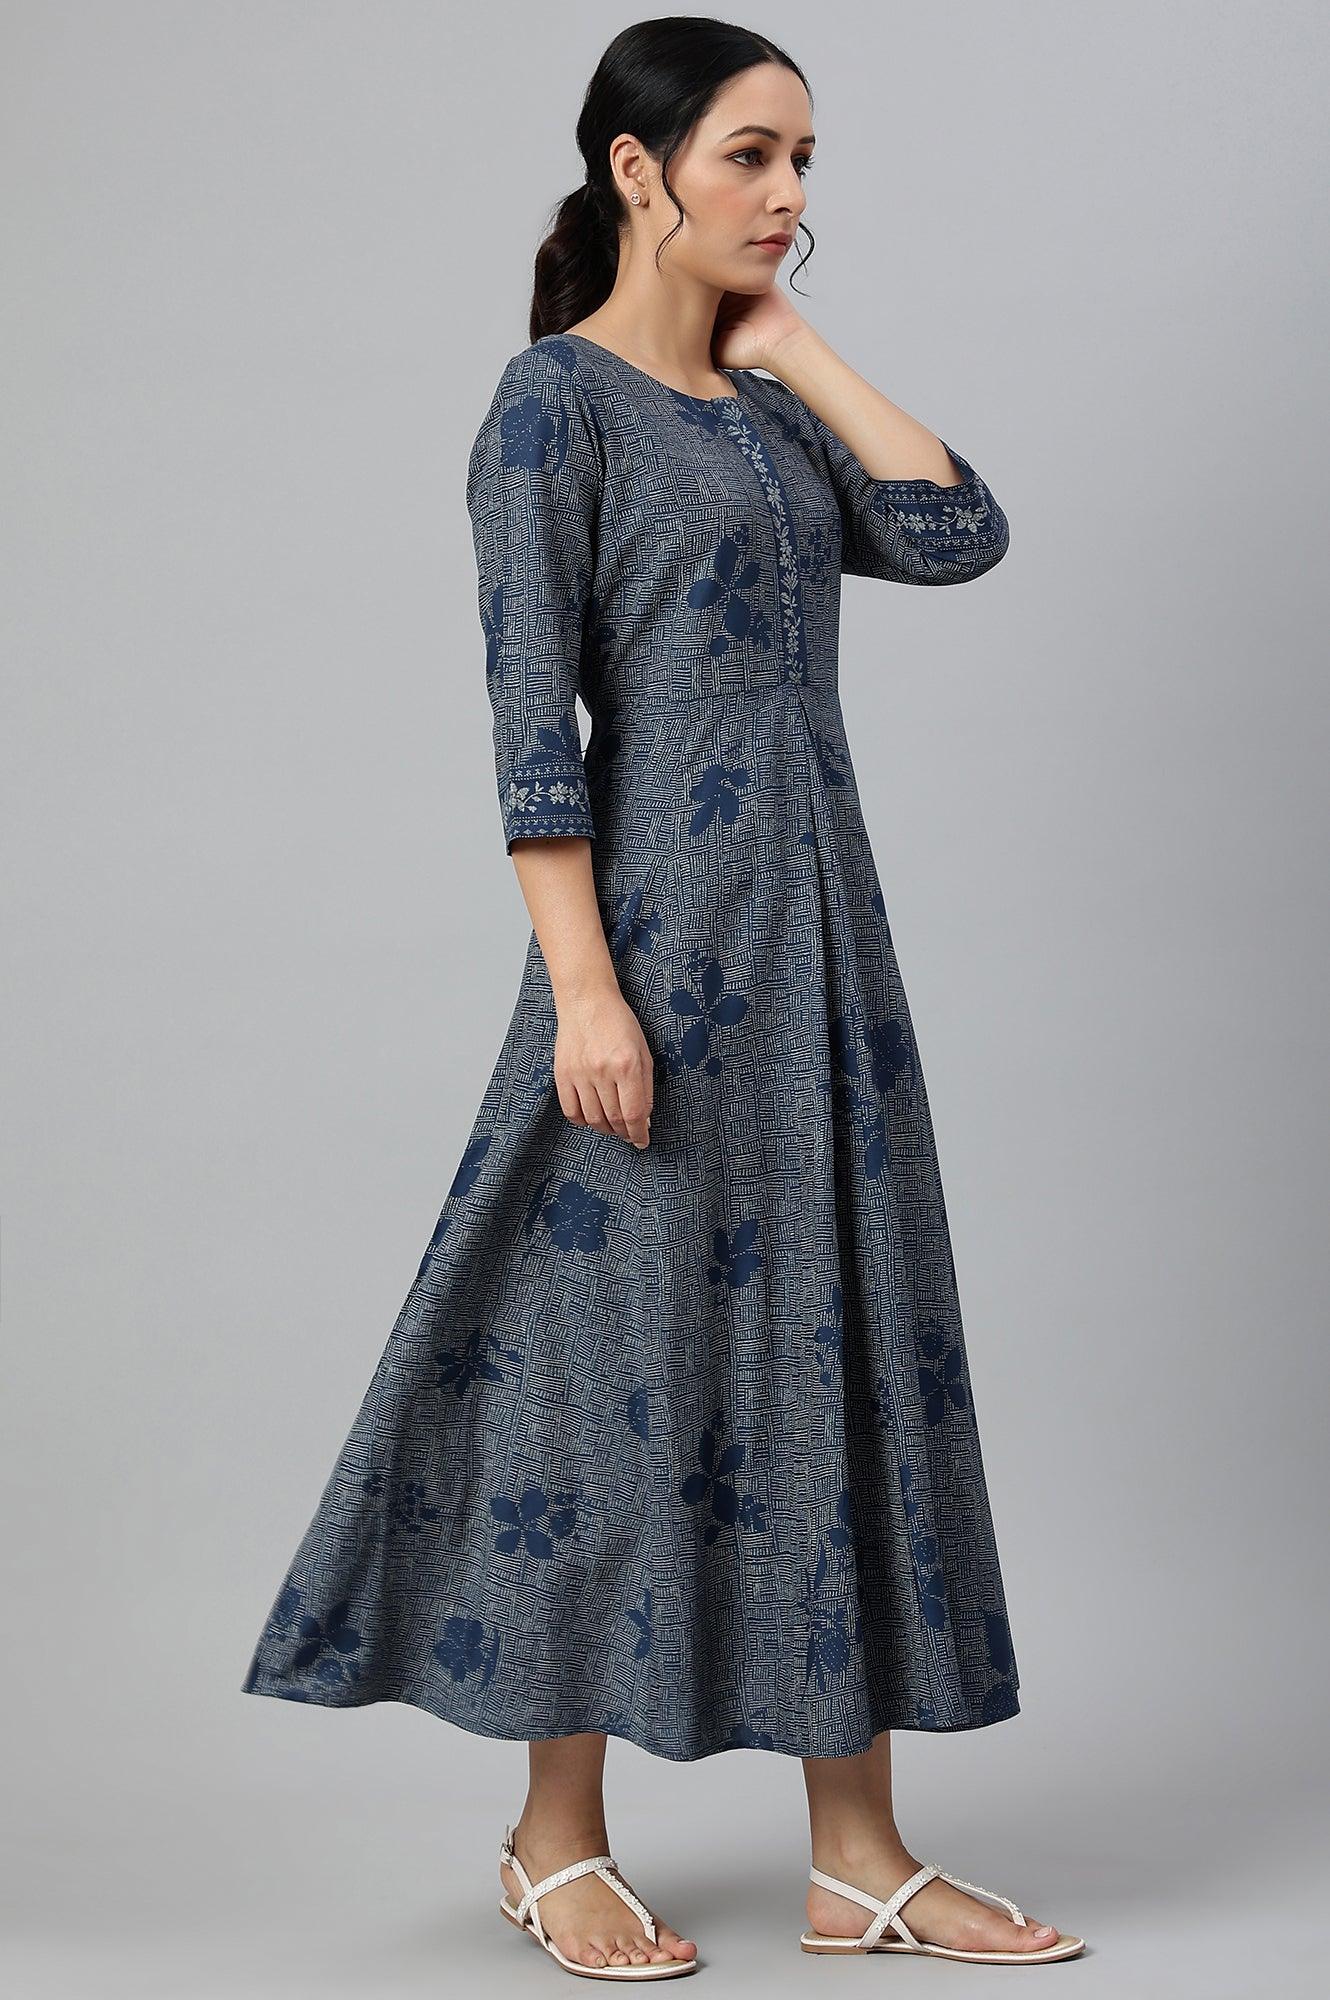 Blue Floral Printed Flared Indie Dress - wforwoman